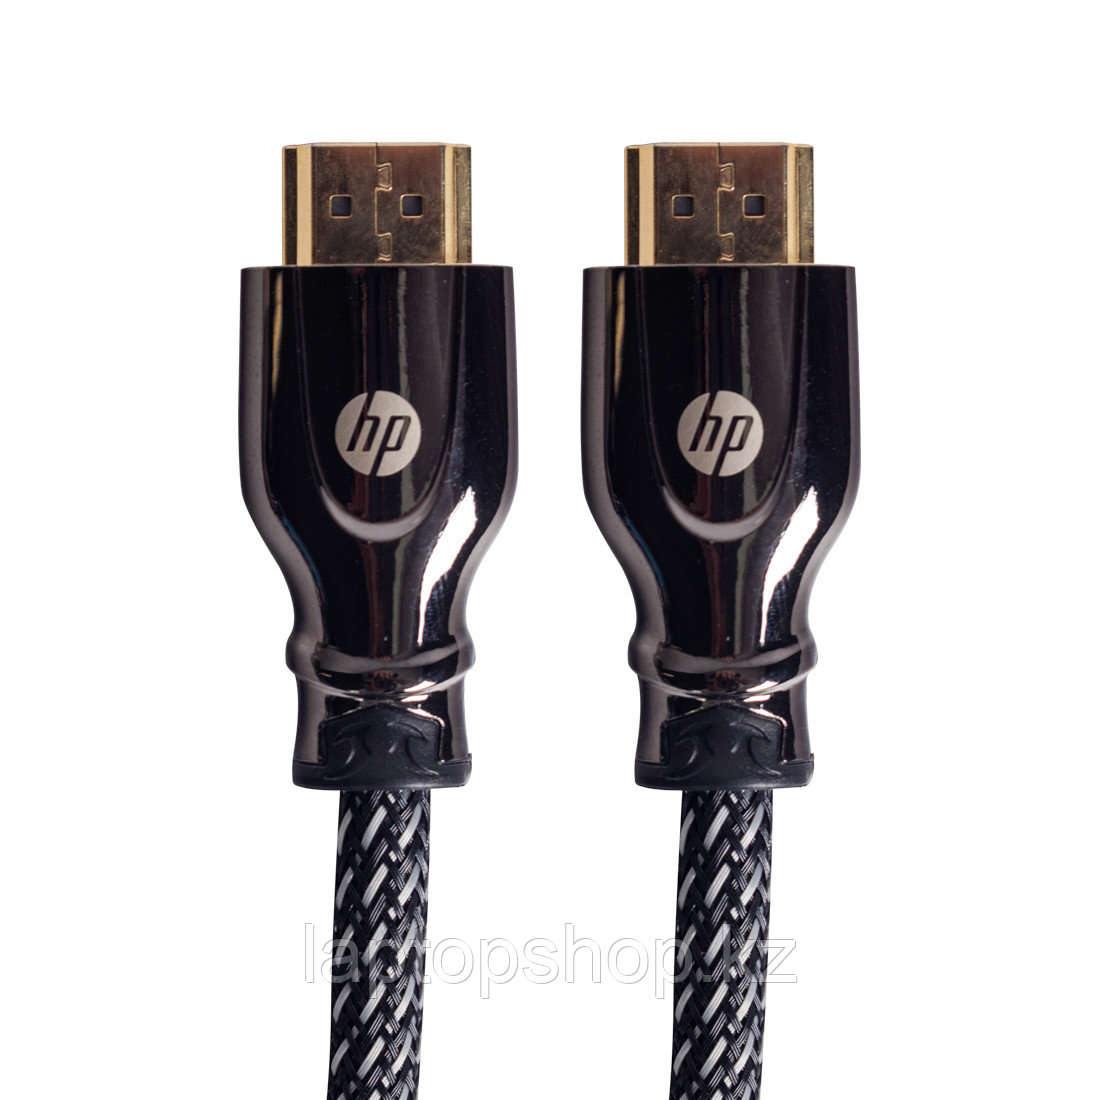 Интерфейсный кабель HP PRO HDMI на HDMI Cable, HP026GBBLK1.5TW,1.5m, фото 1